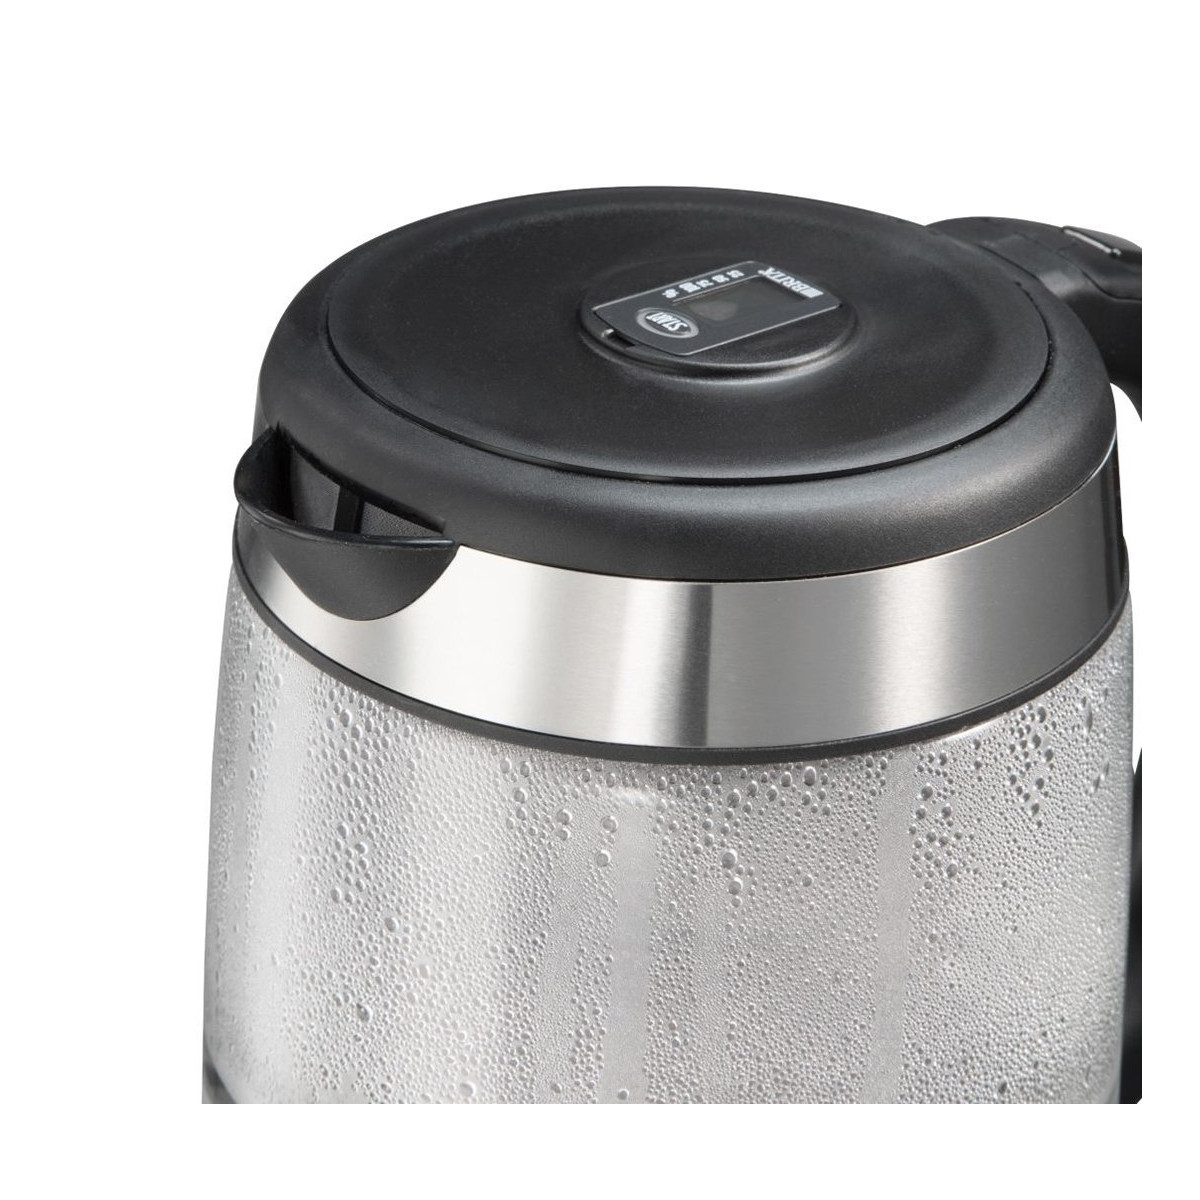 RUSSELL 20760-57 HOBBS Clarity Wasserkocher, Silber